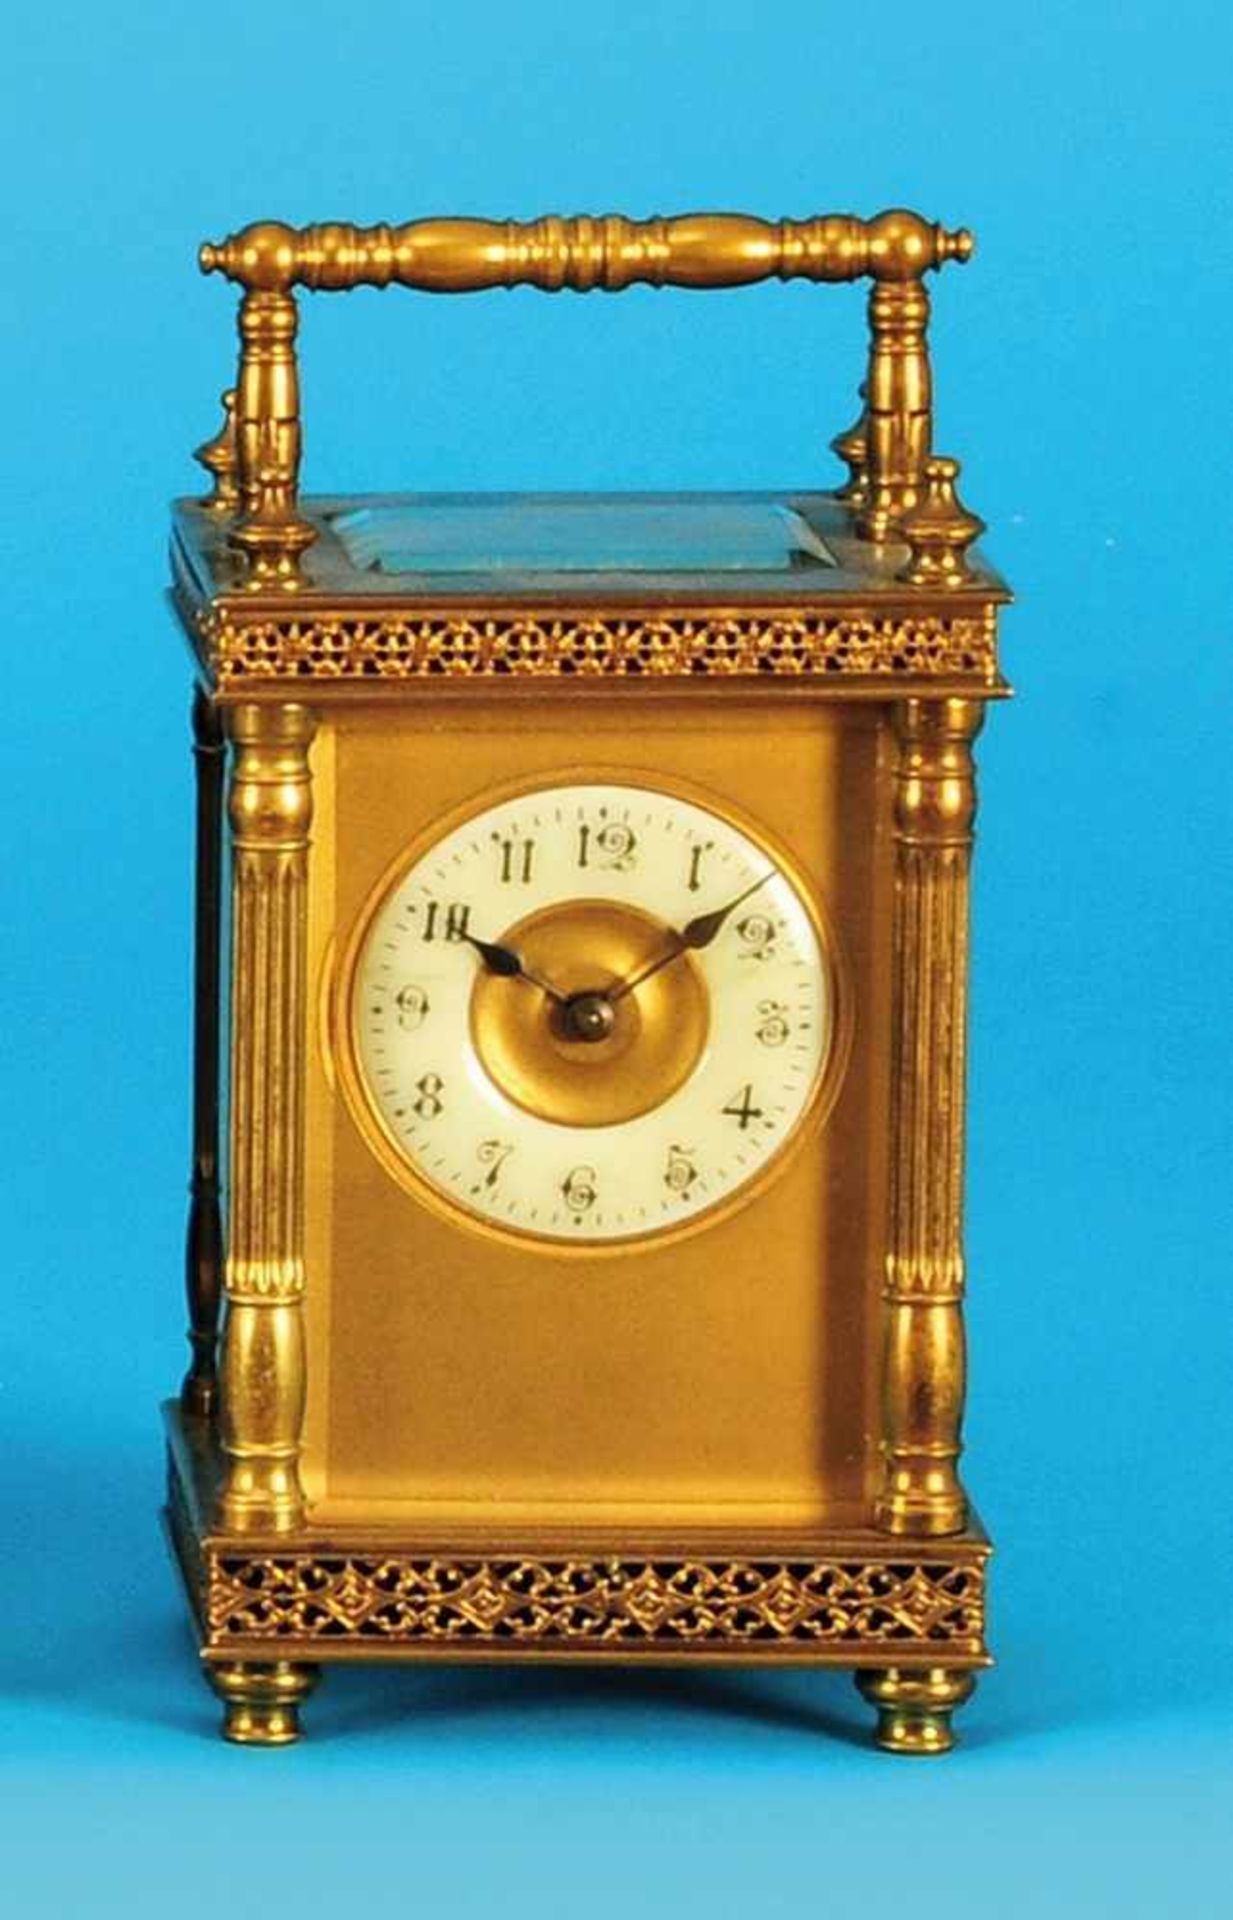 French travel clockFranzösische Reiseuhr, mit Säulen verziertes, rundum verglastes Gehäuse mit